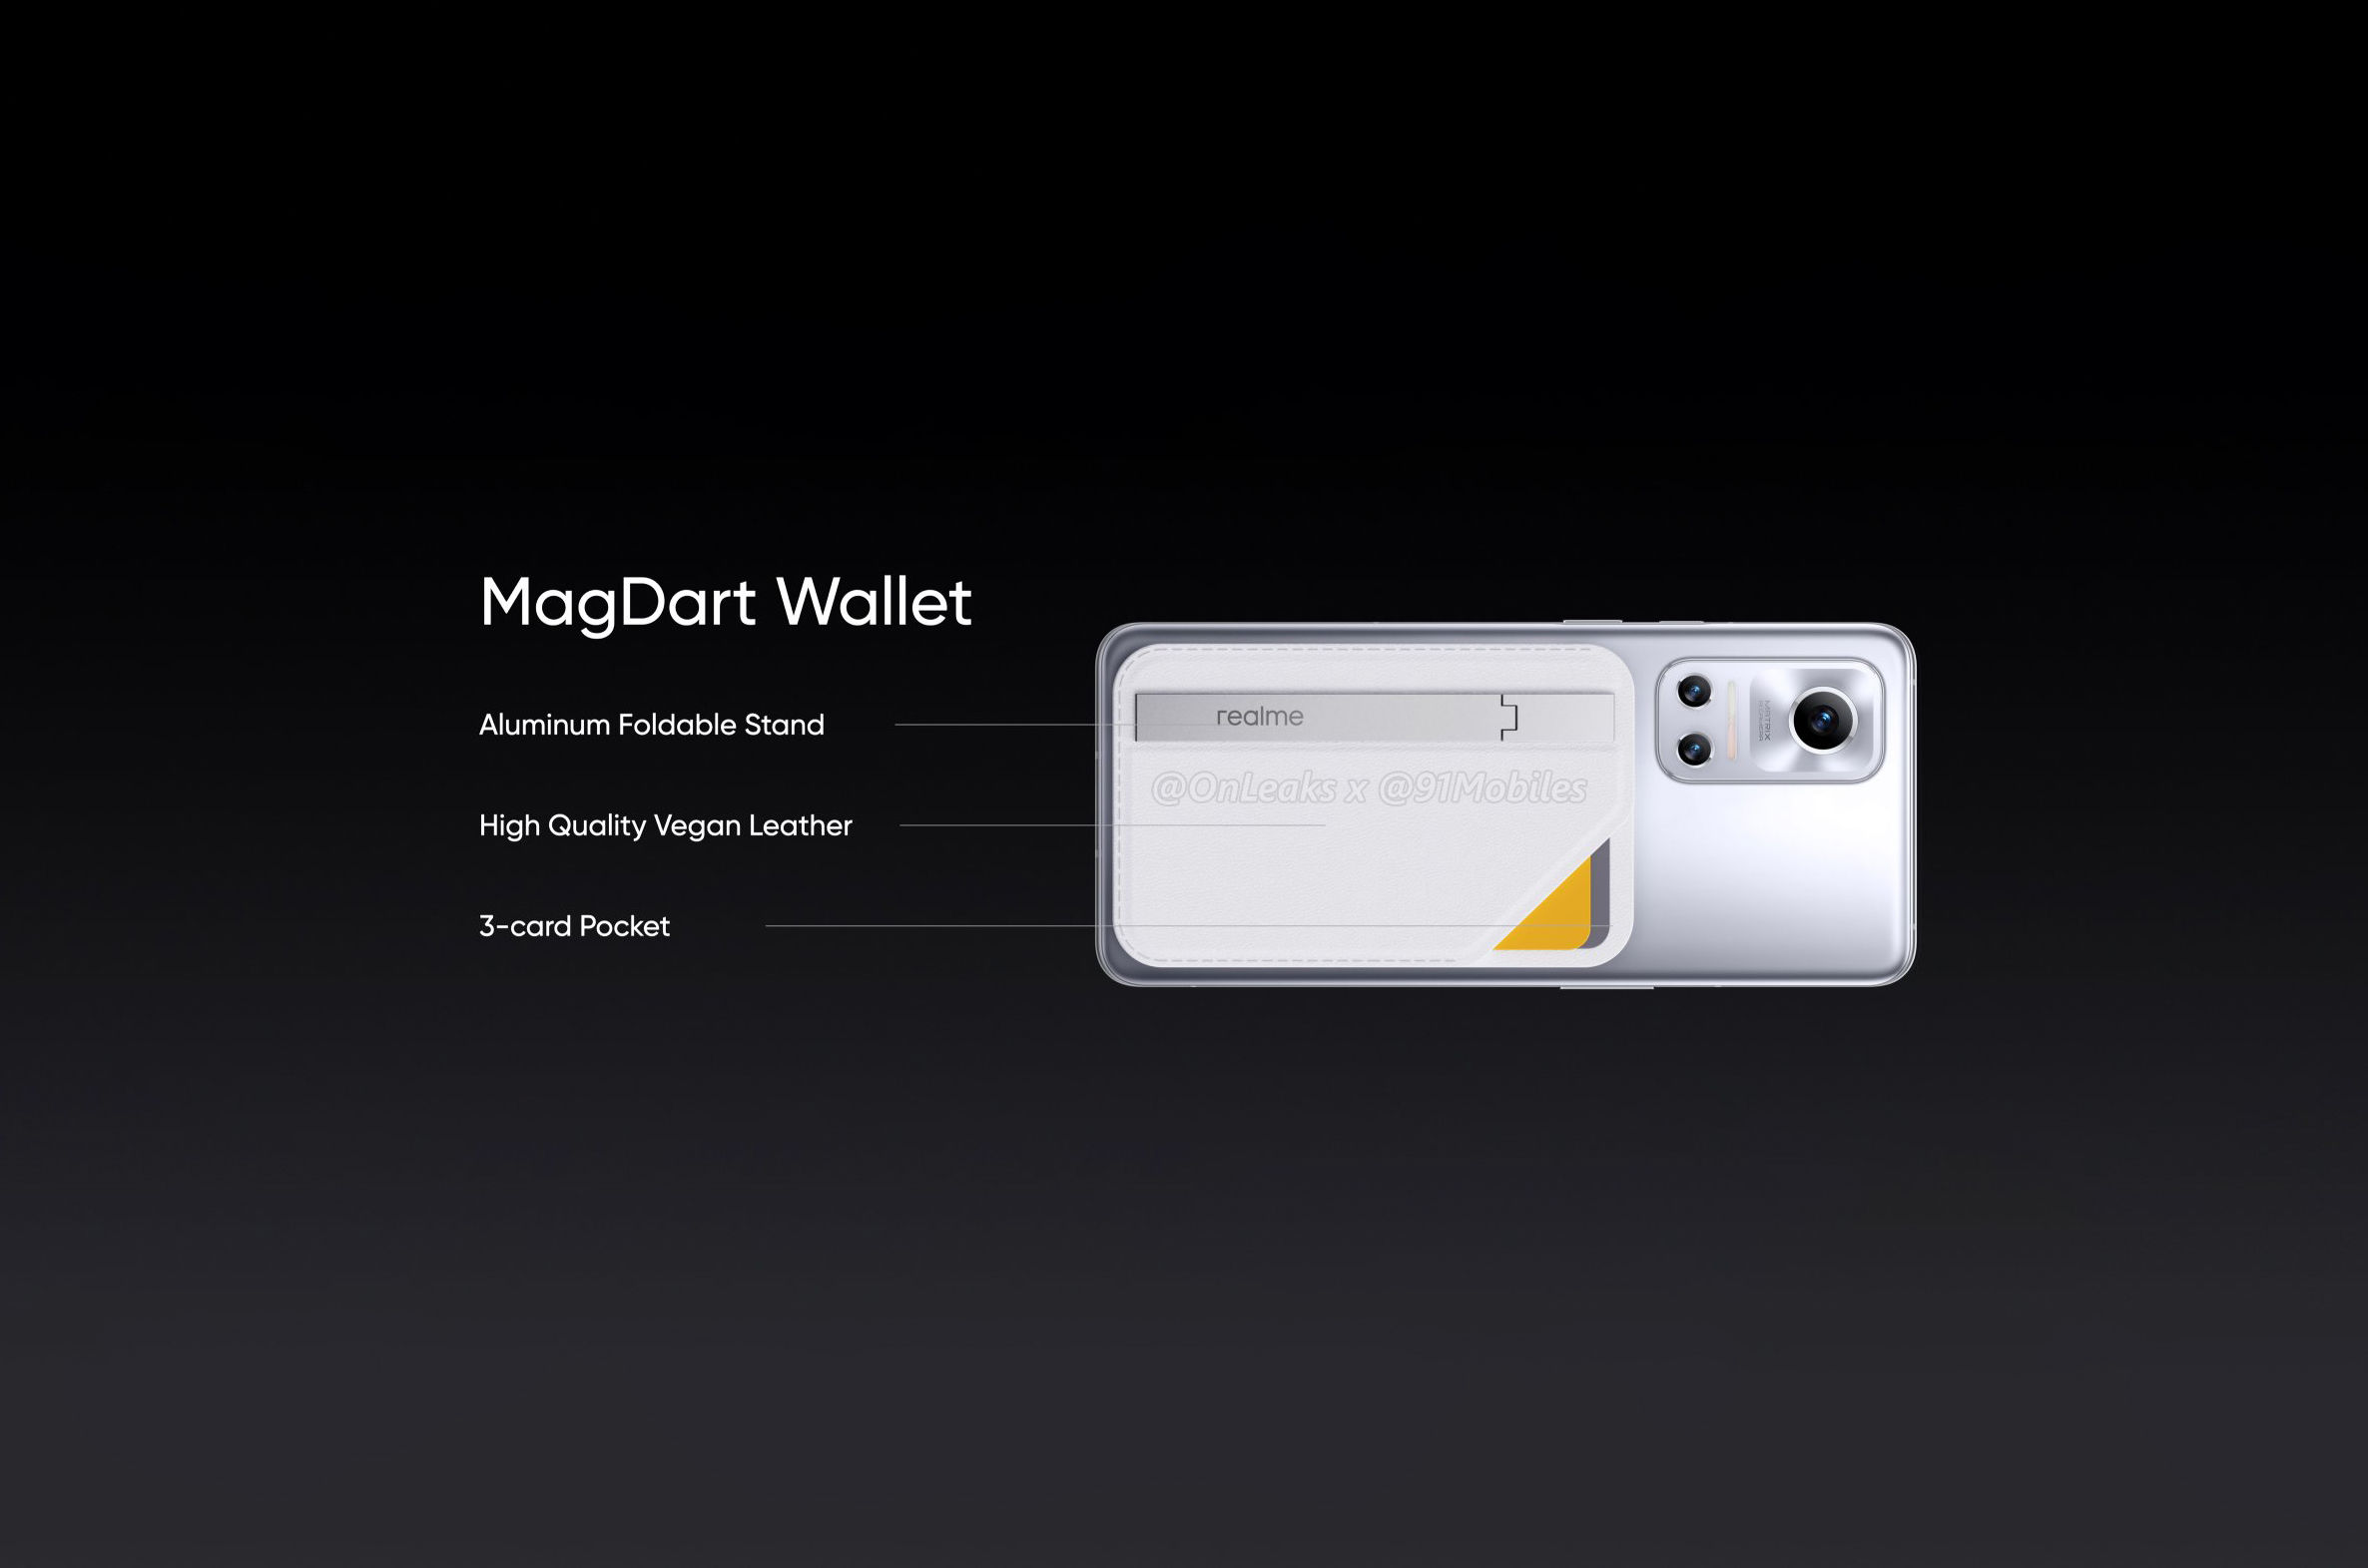 Realme Flash pojawił się na zdjęciach w wysokiej jakości z magnetycznym etui MagDart Wallet